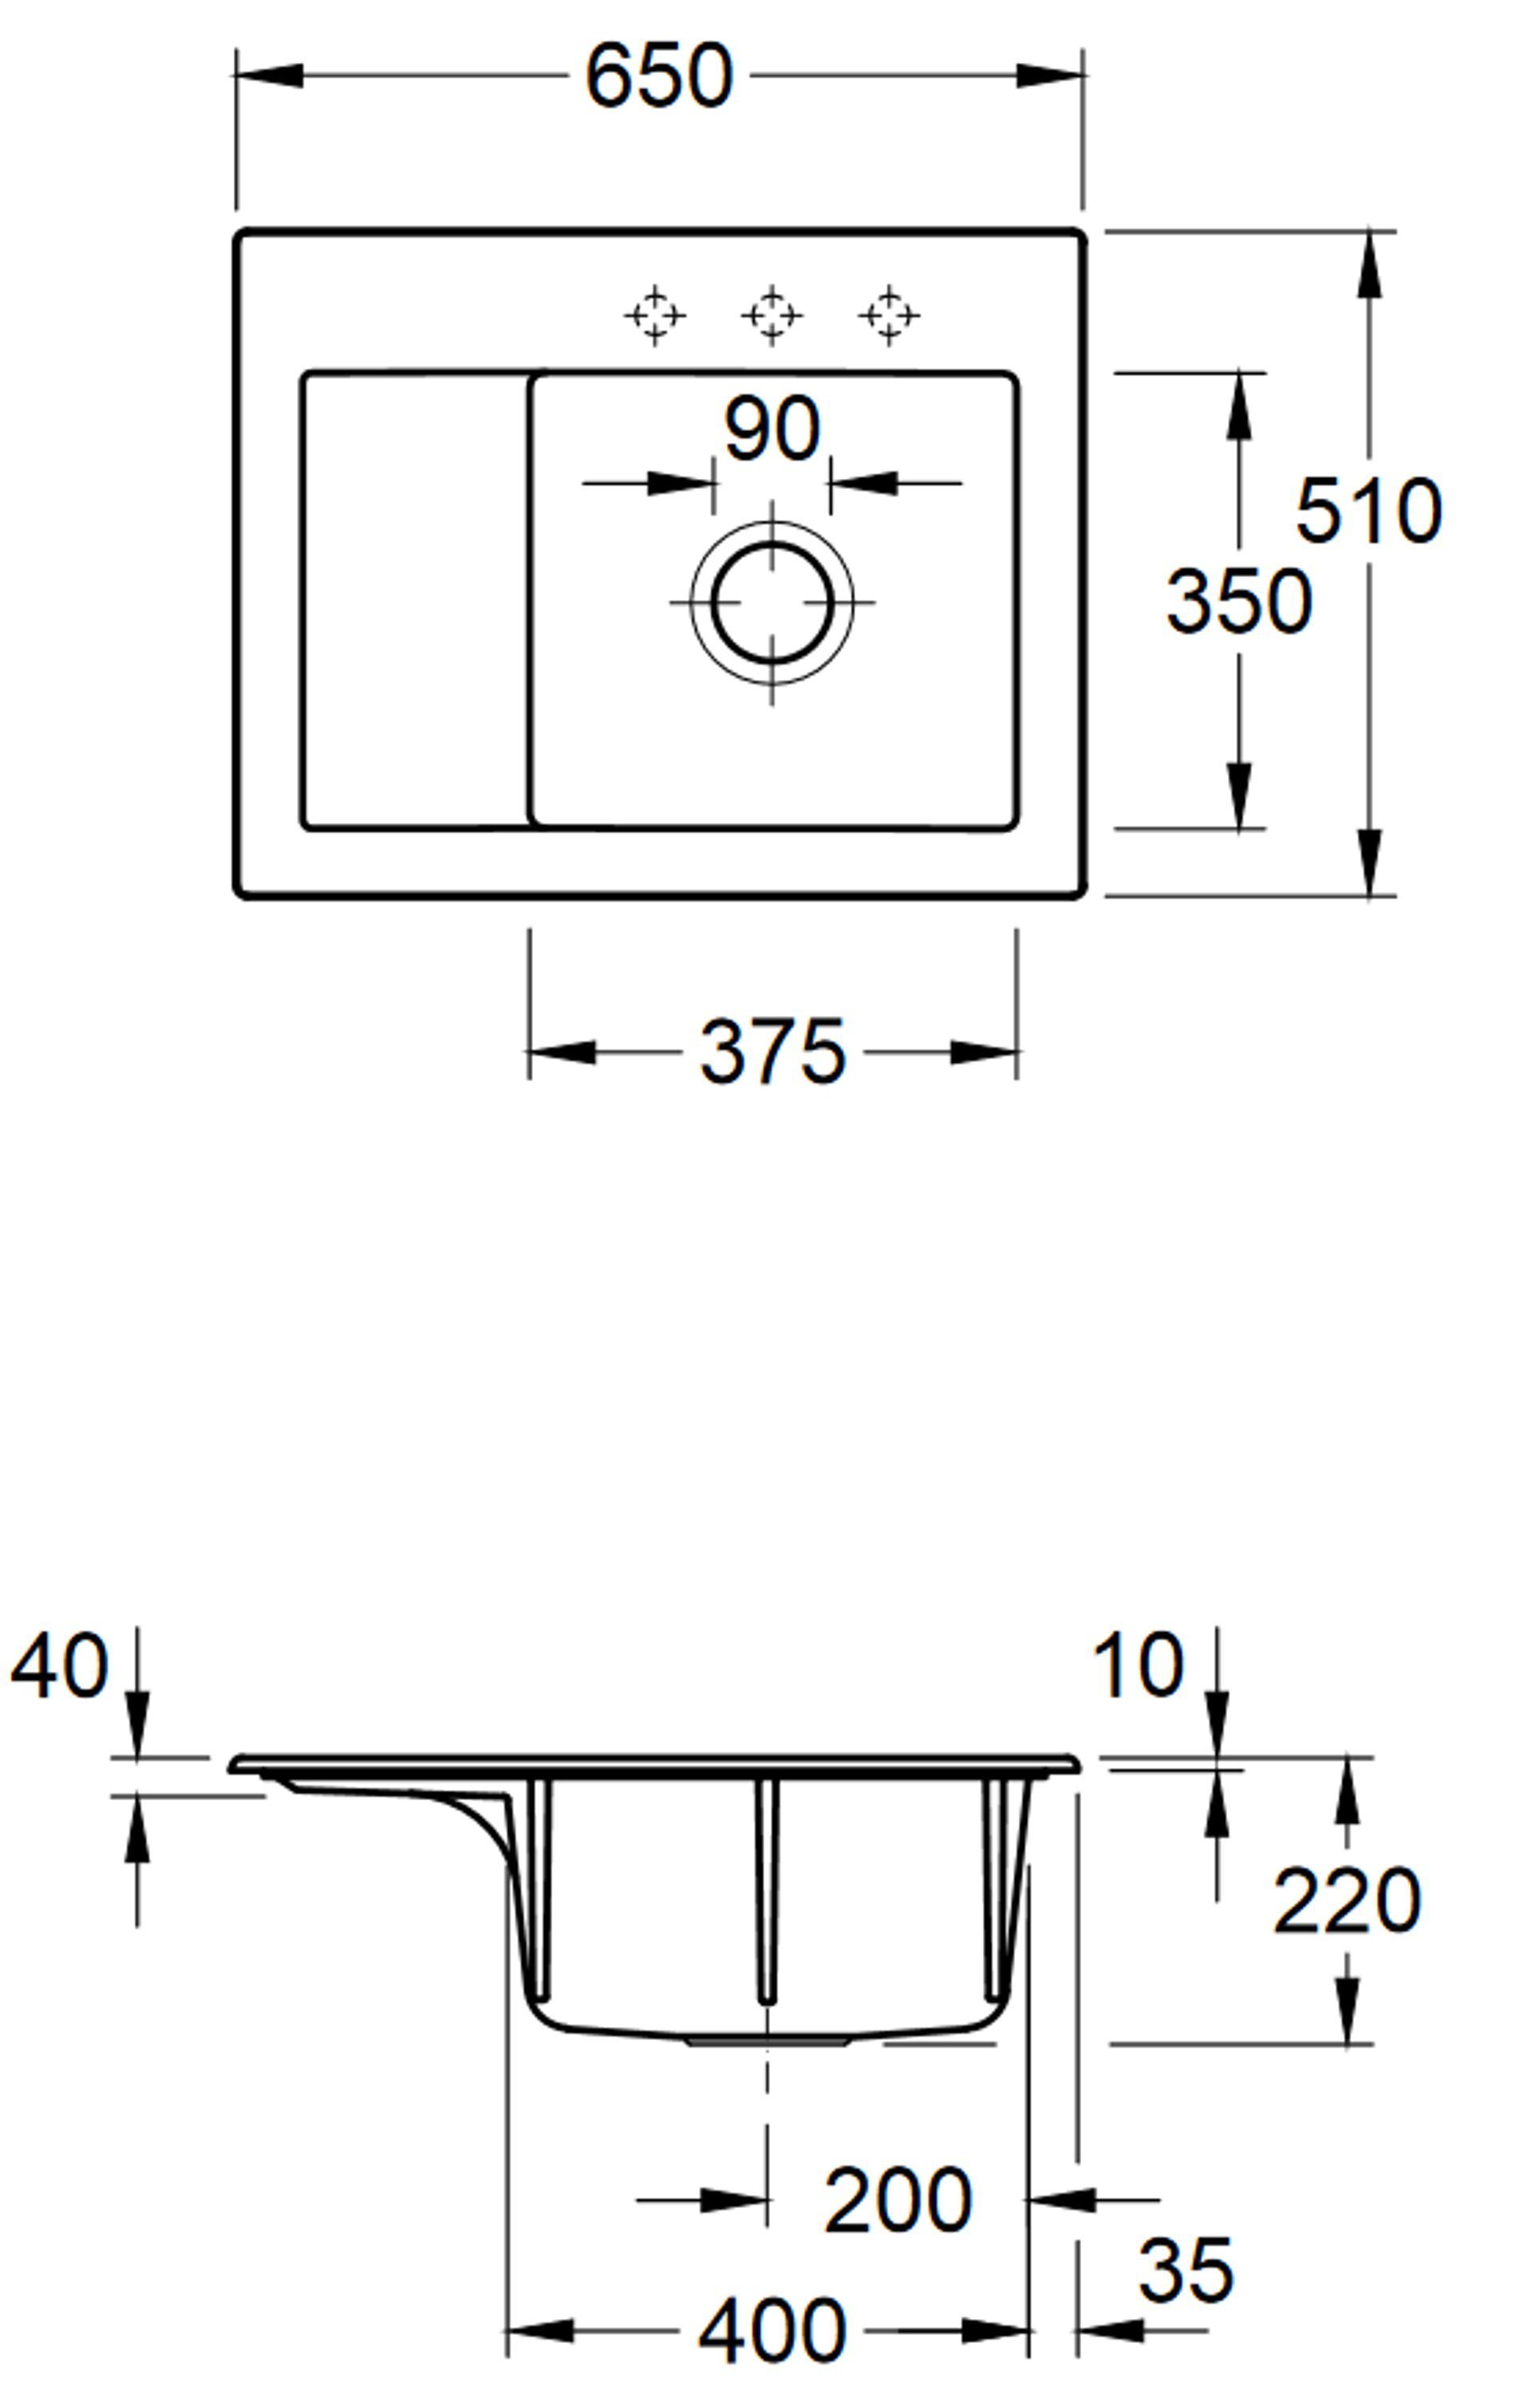 Küchenspüle 01 3313 möglich rechts Compact i4, Becken Rechteckig, links 65/22 Subway & cm, Serie, Villeroy Boch und